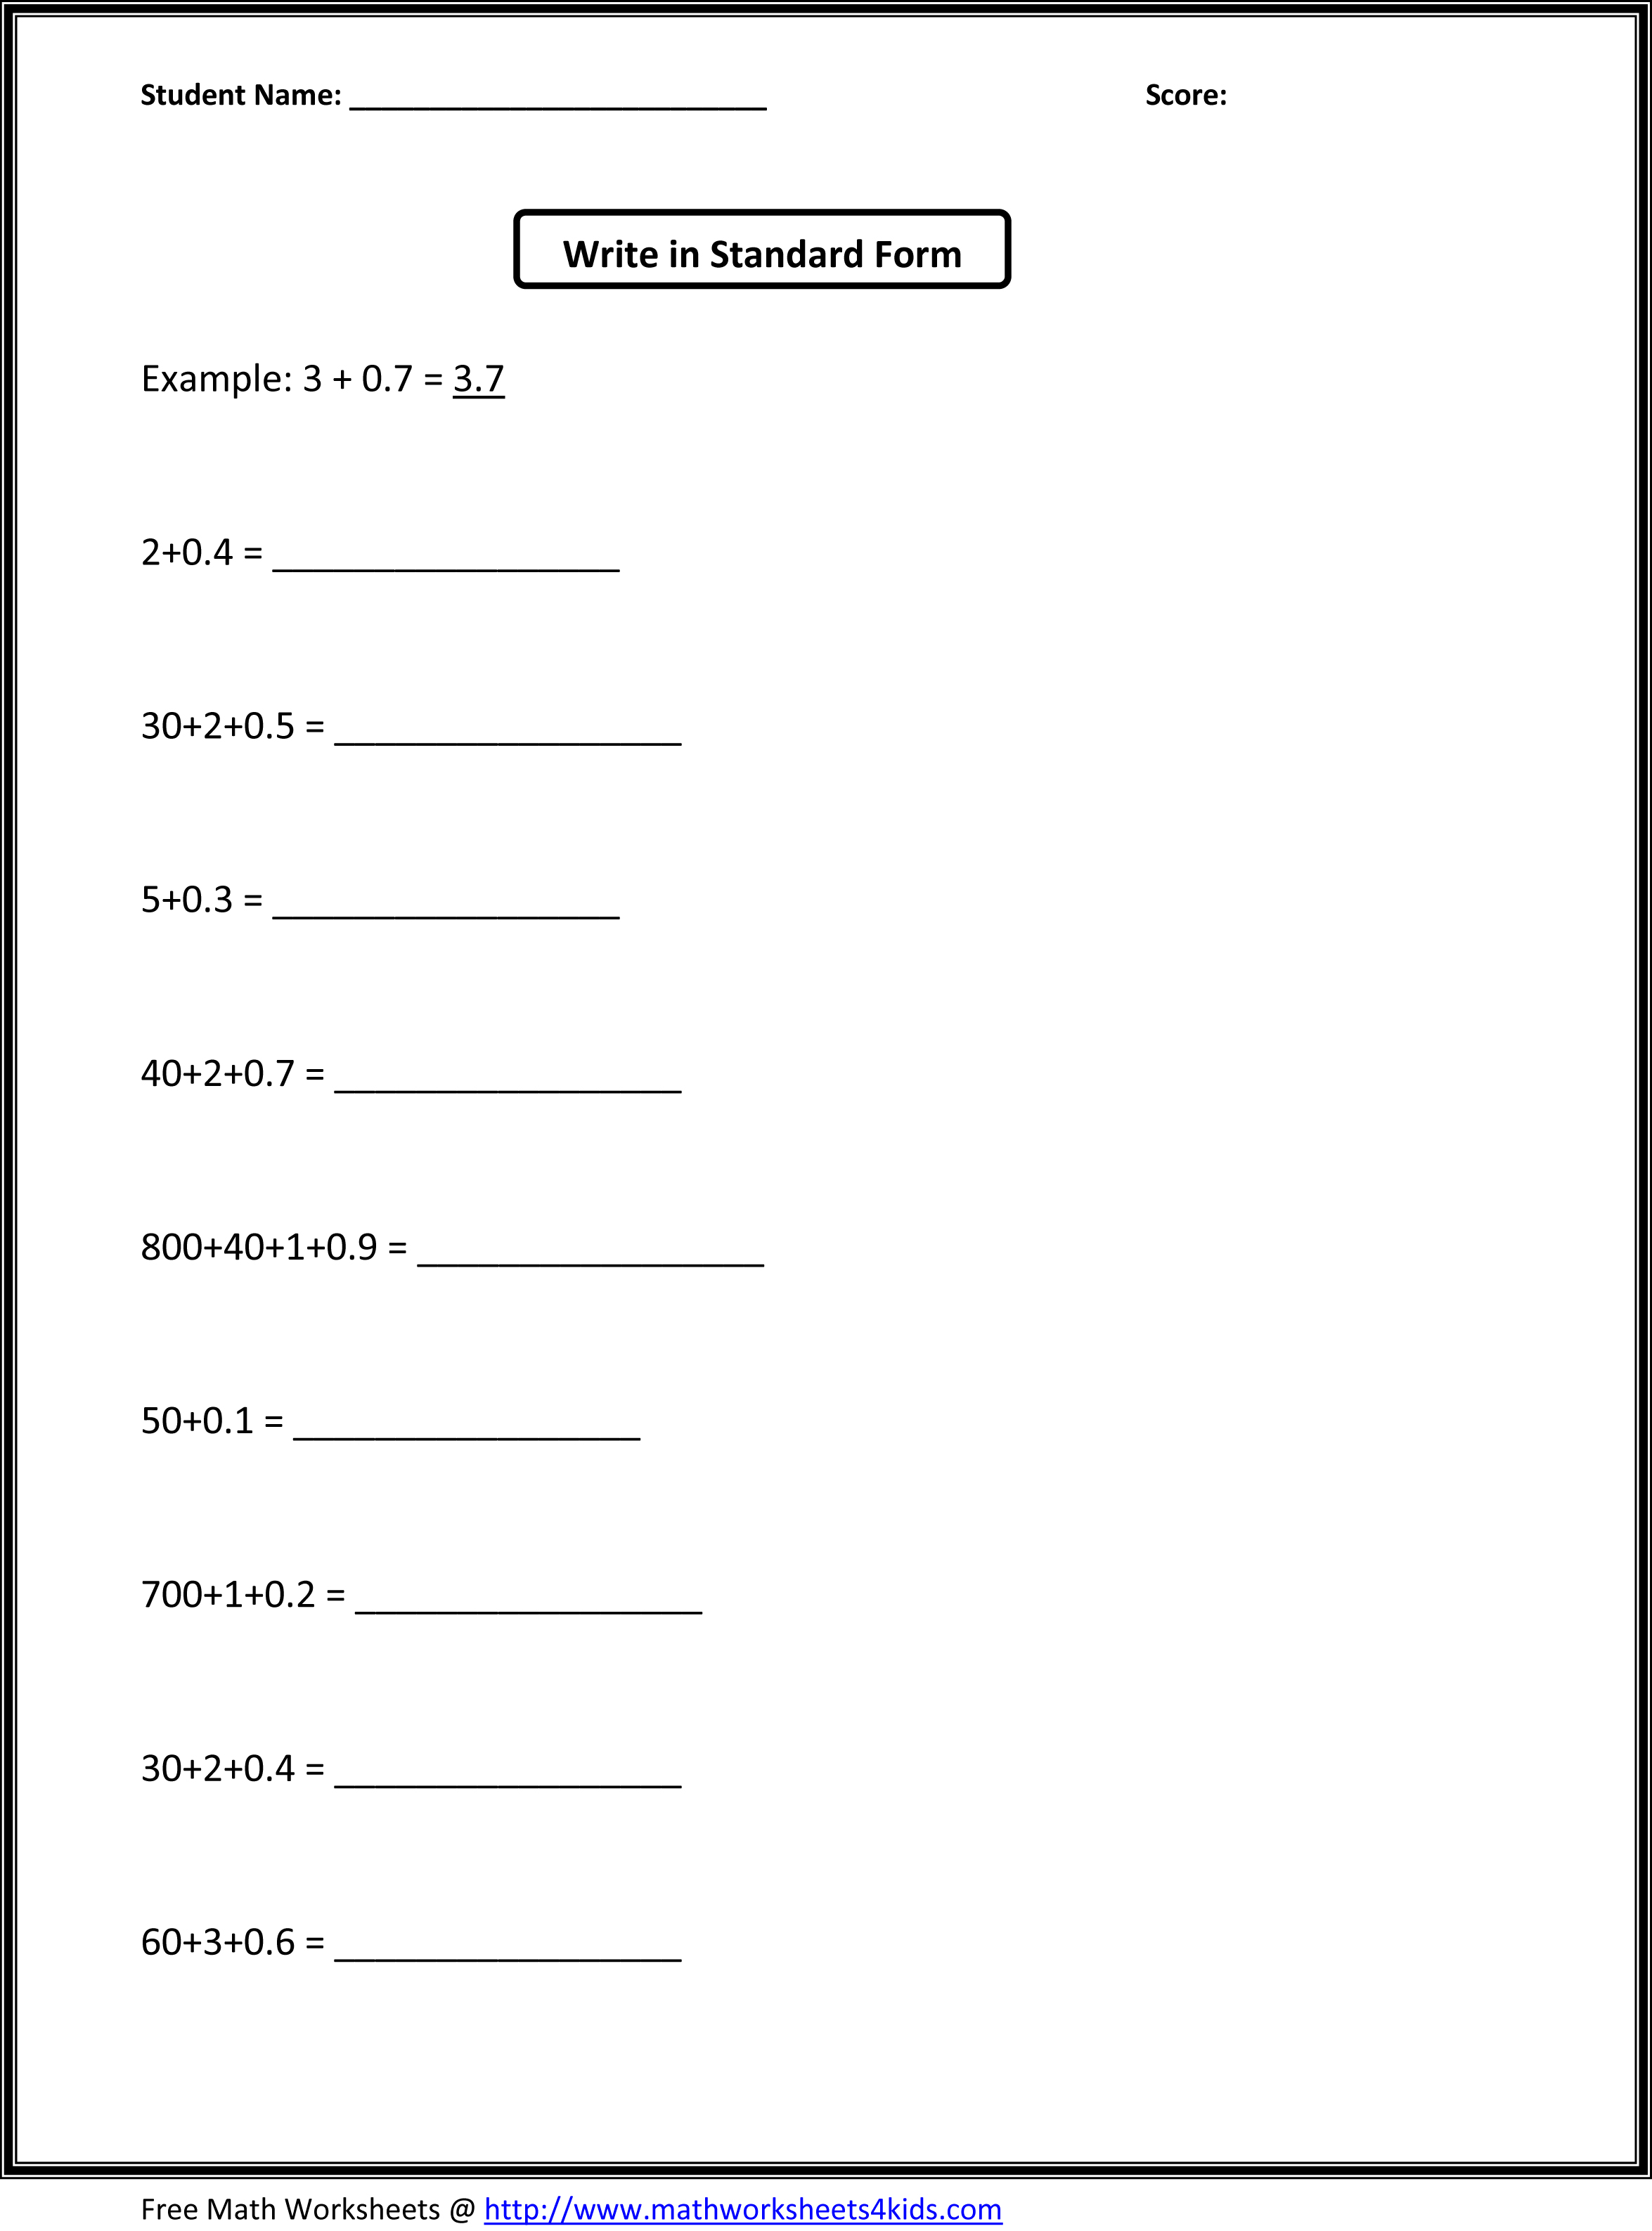 16 Best Images of 3rd Grade Fraction Practice Worksheets - Fraction